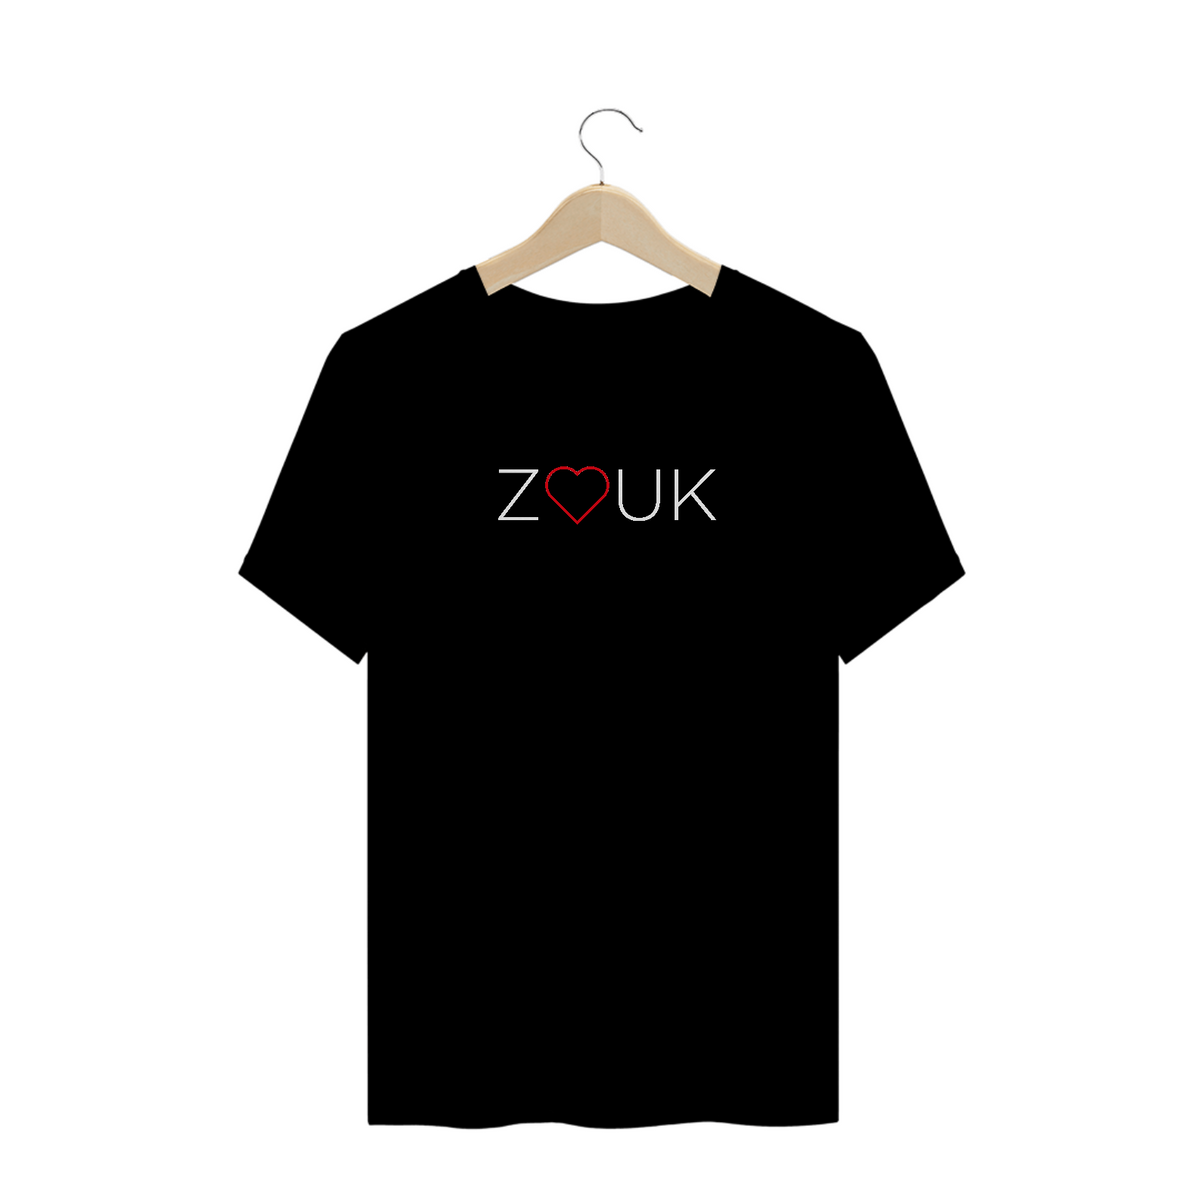 Nome do produto: Zouk - Heart